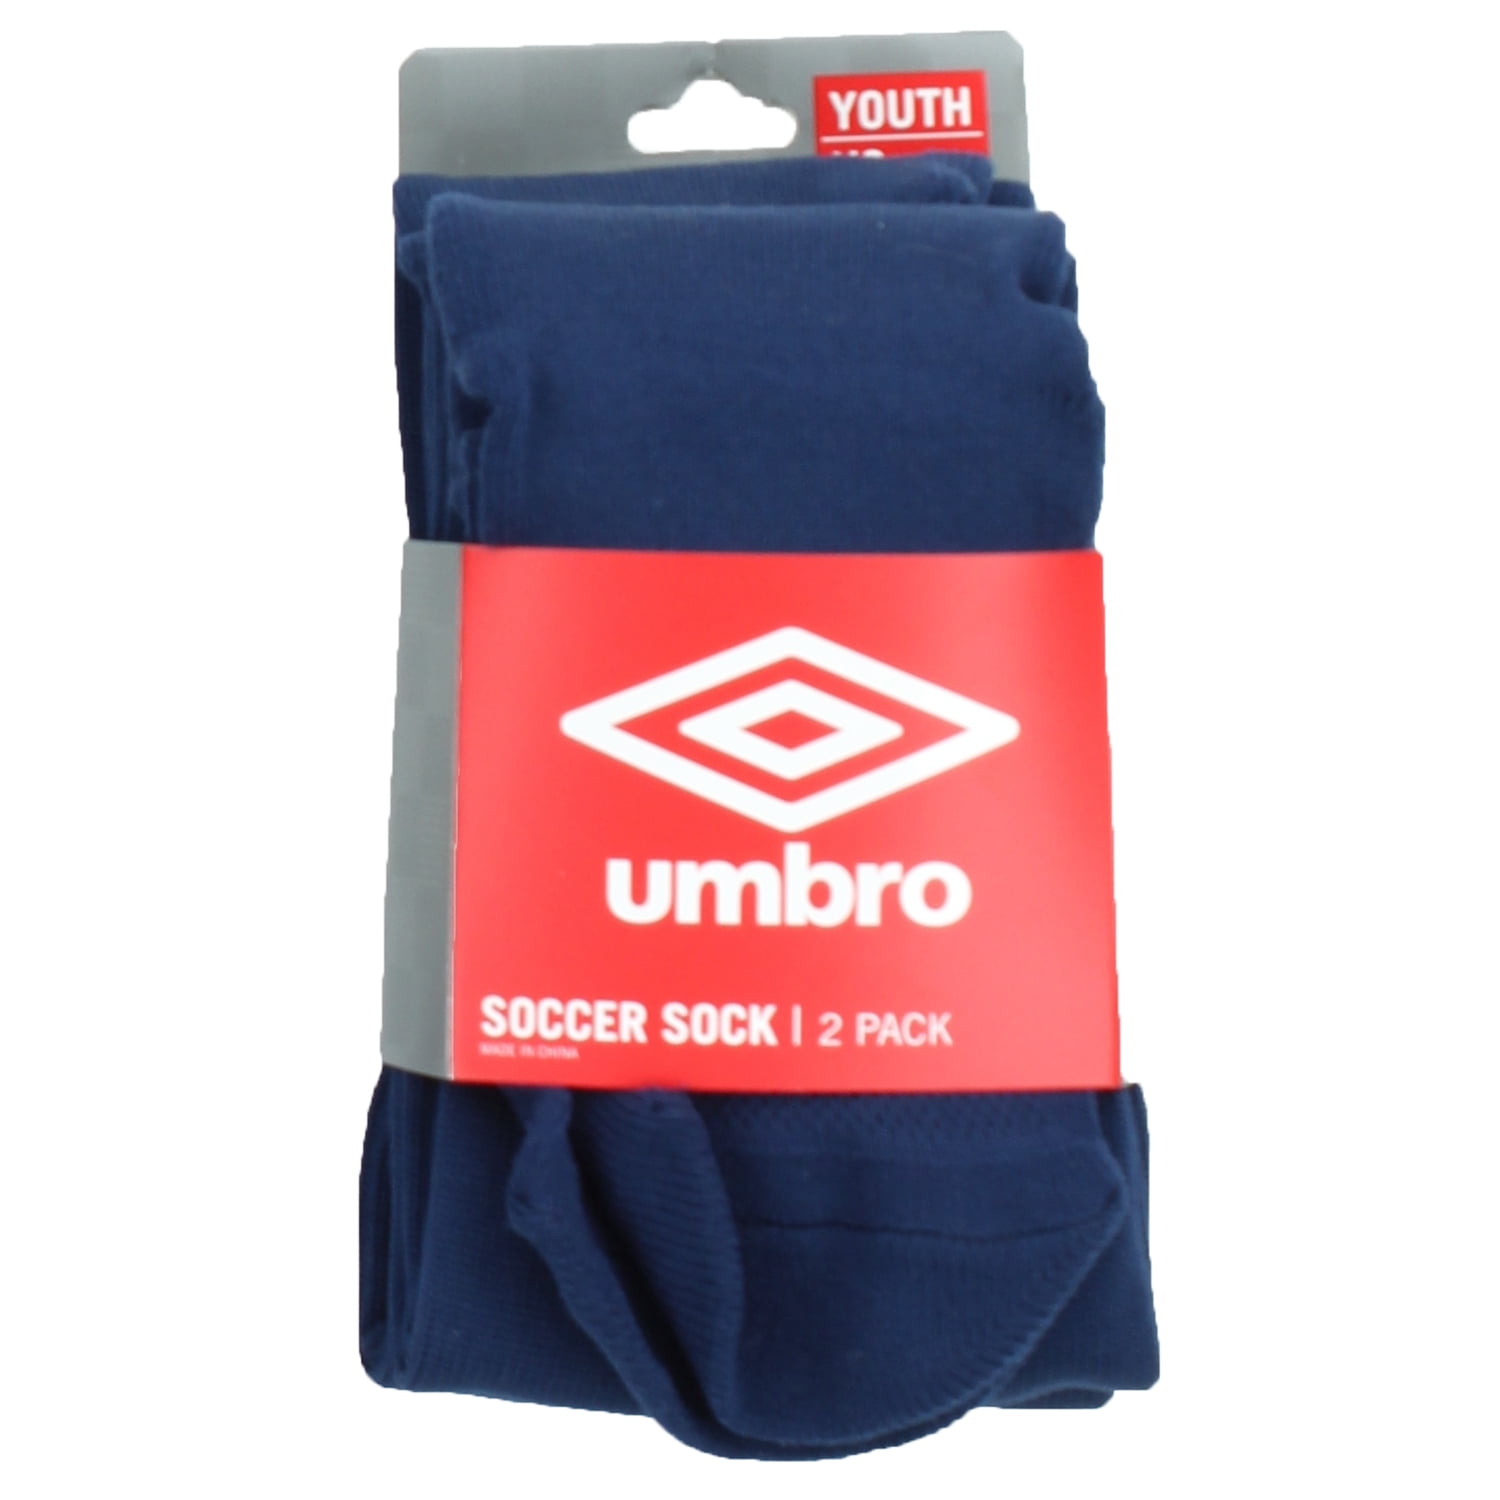 Umbro Soccer Socks Size Chart